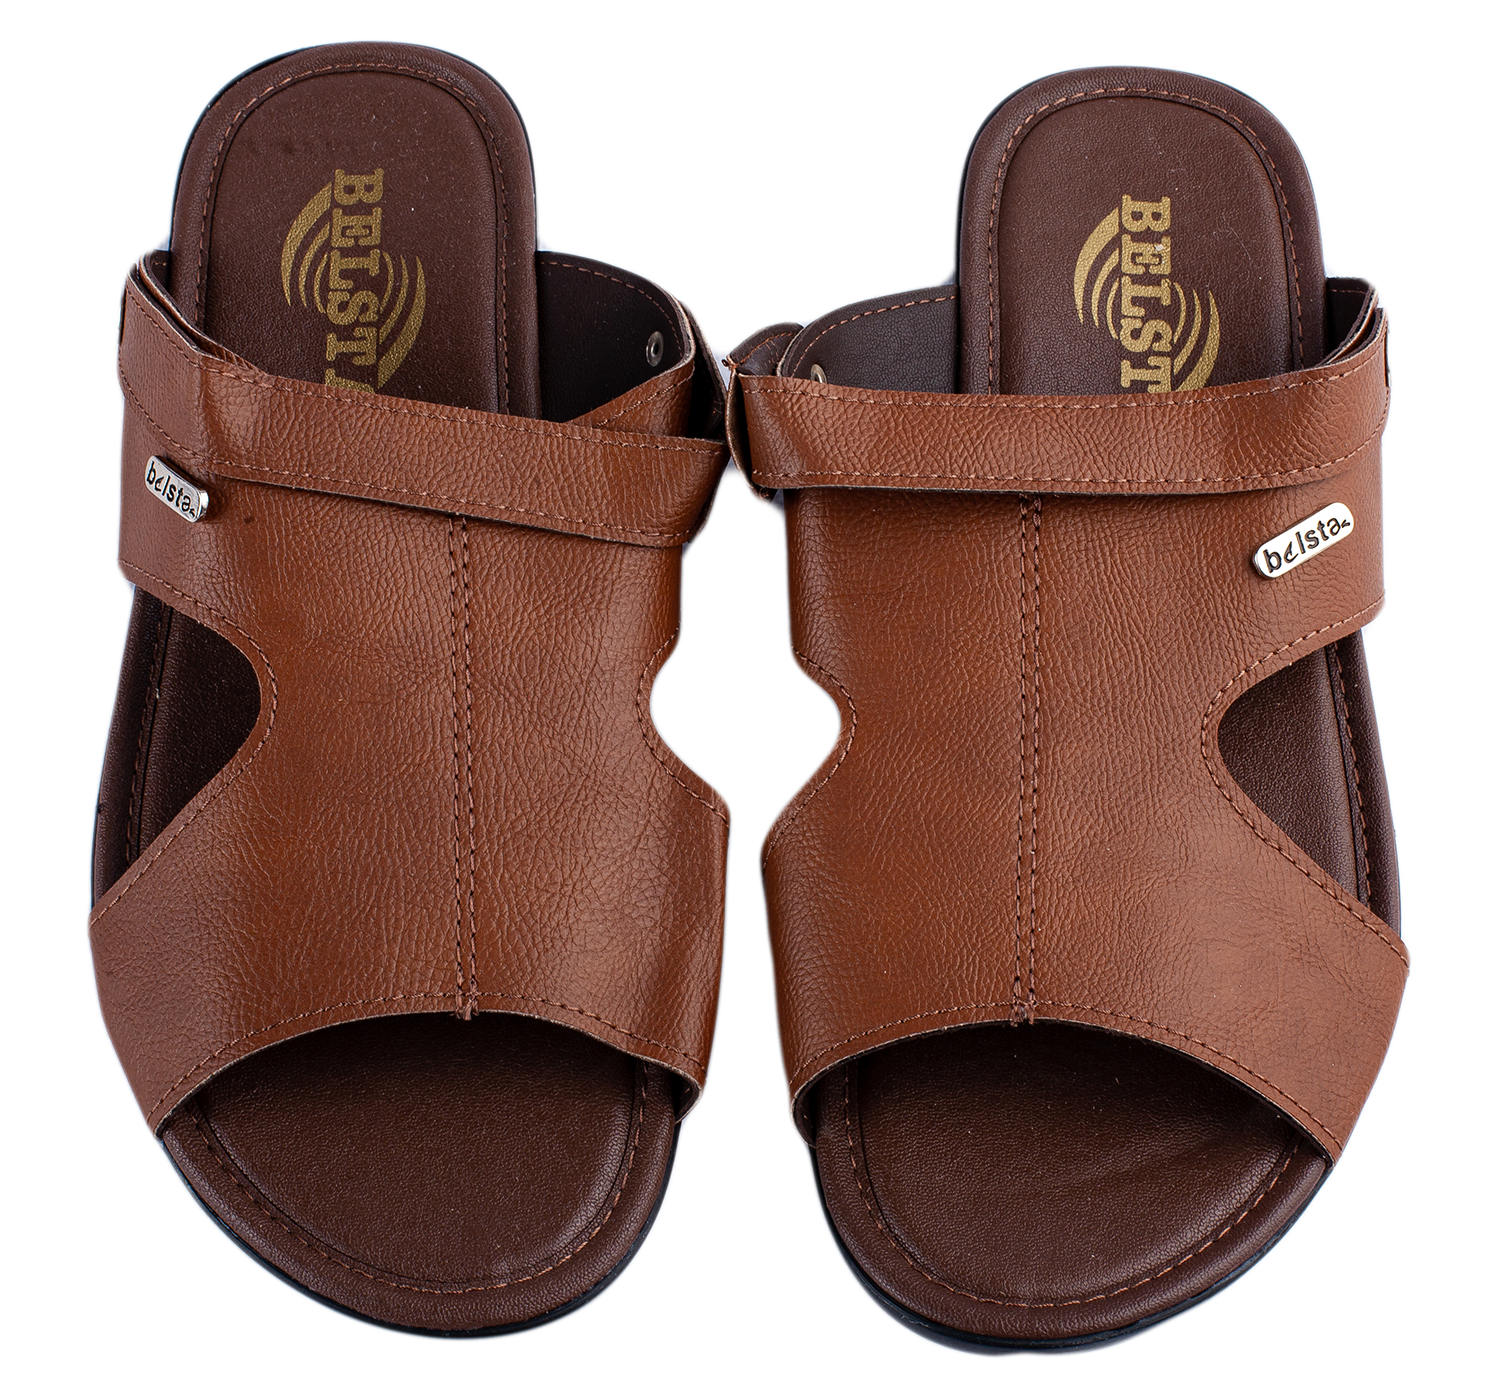 Men's summer flip-flops BELSTA of eco leather - 2